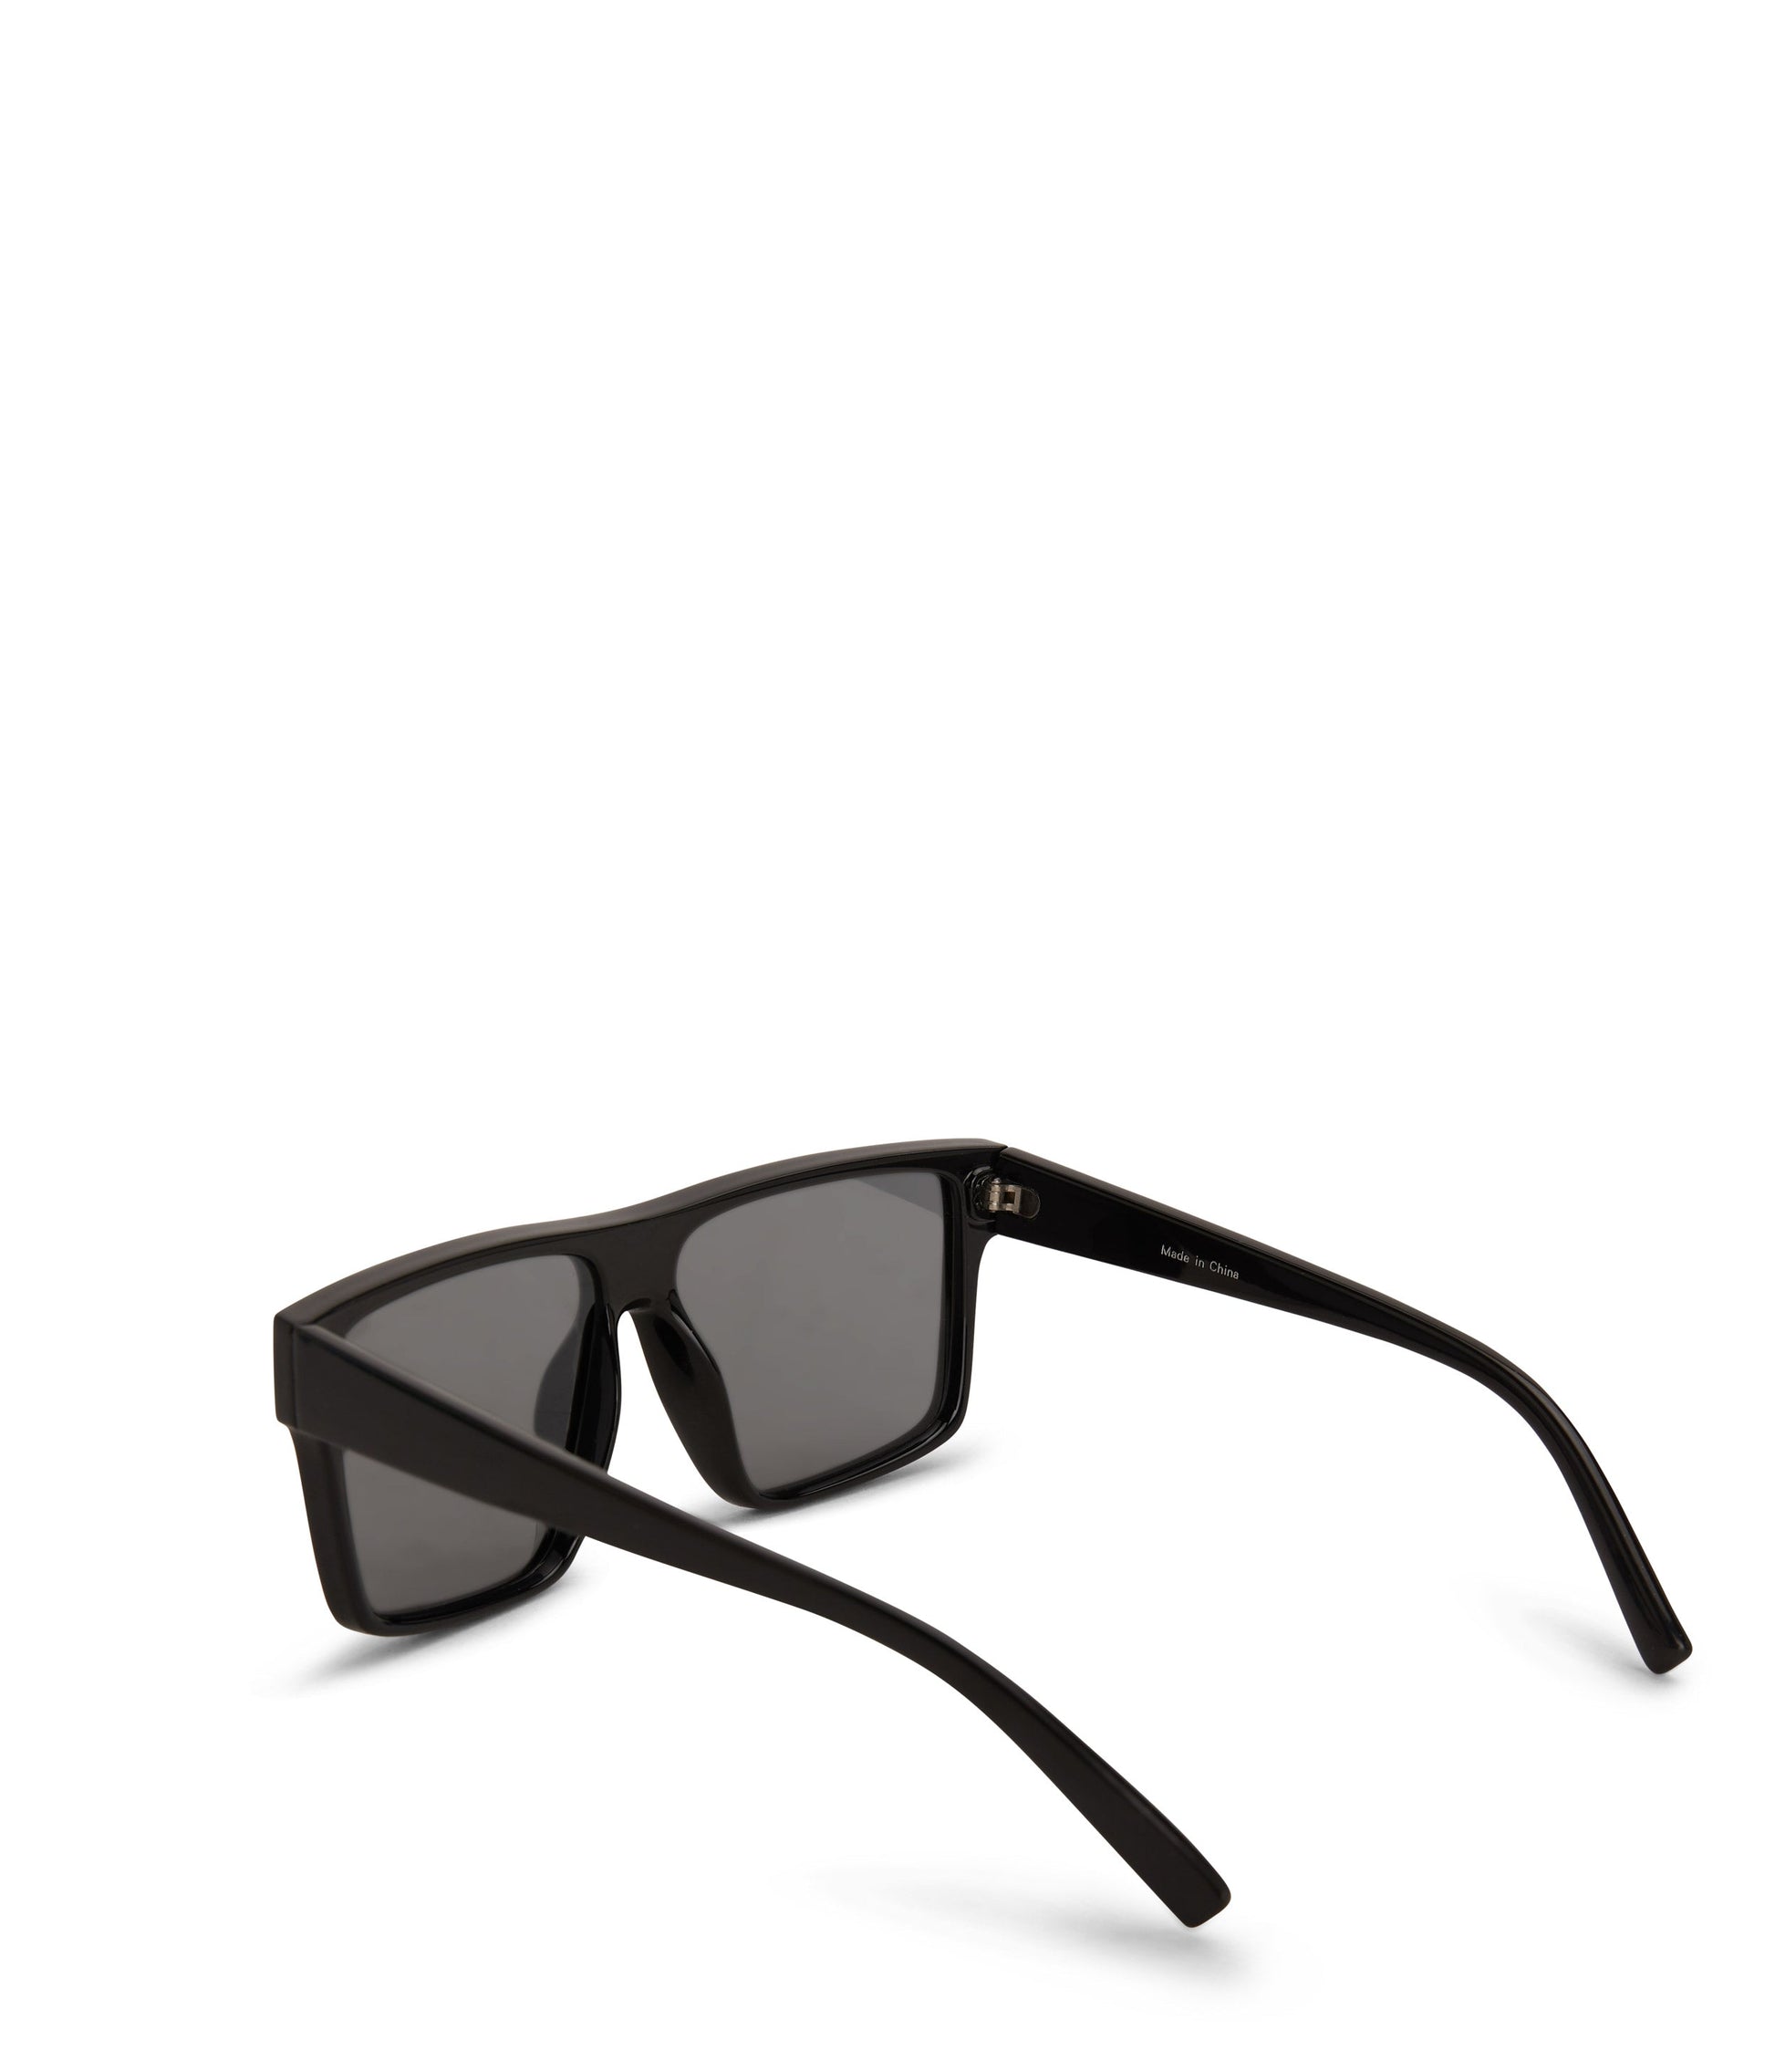 MAEVE Retro Squared Sunglasses | Color: Black - variant::black